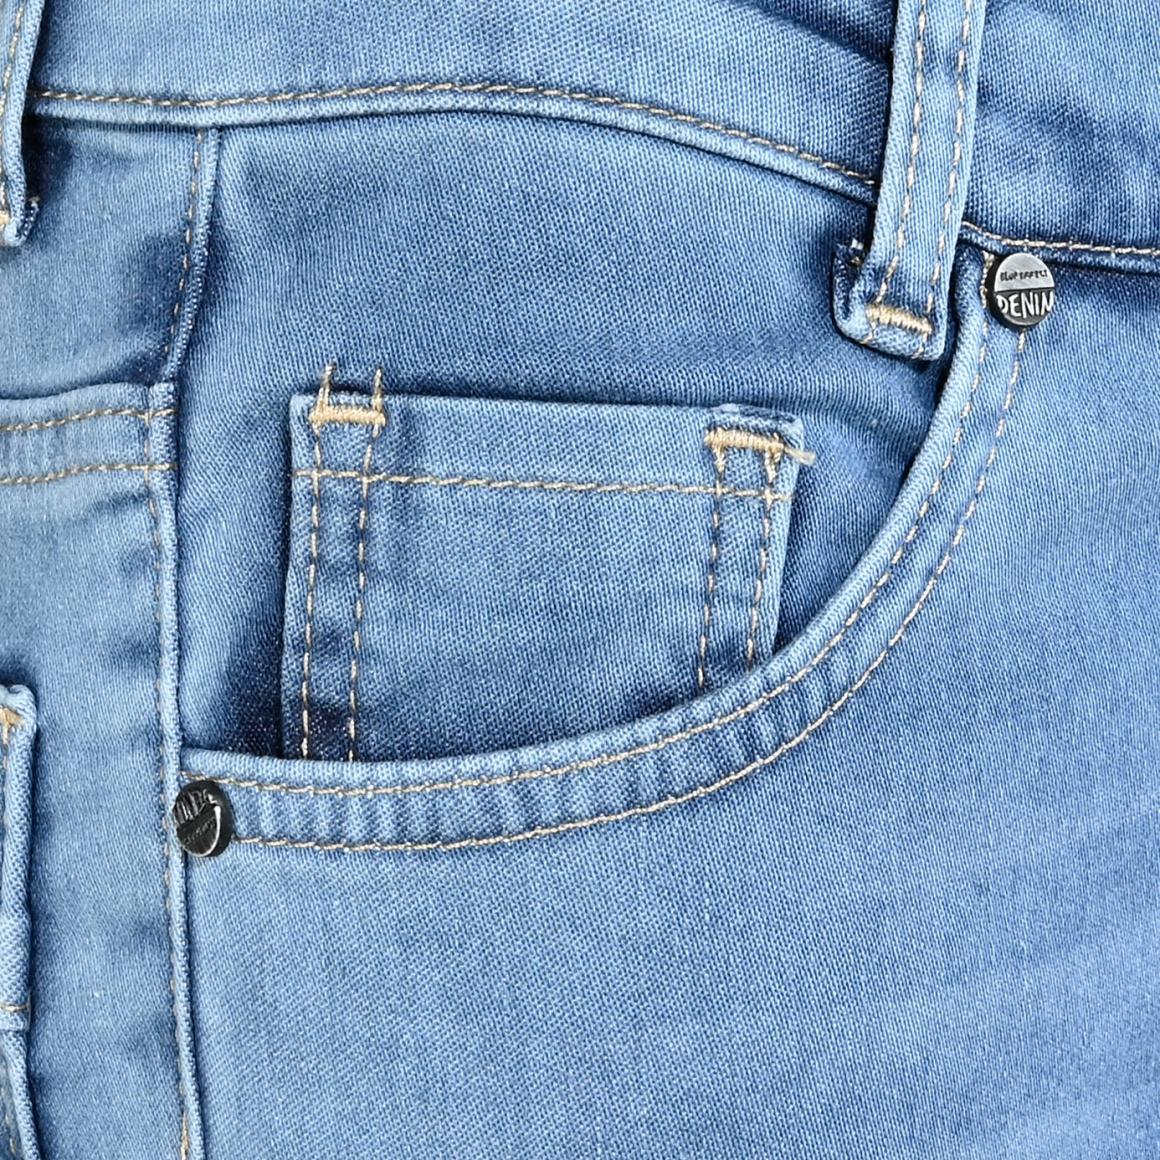 Jungen Jeans 2182-2751 Medium Blue Wide